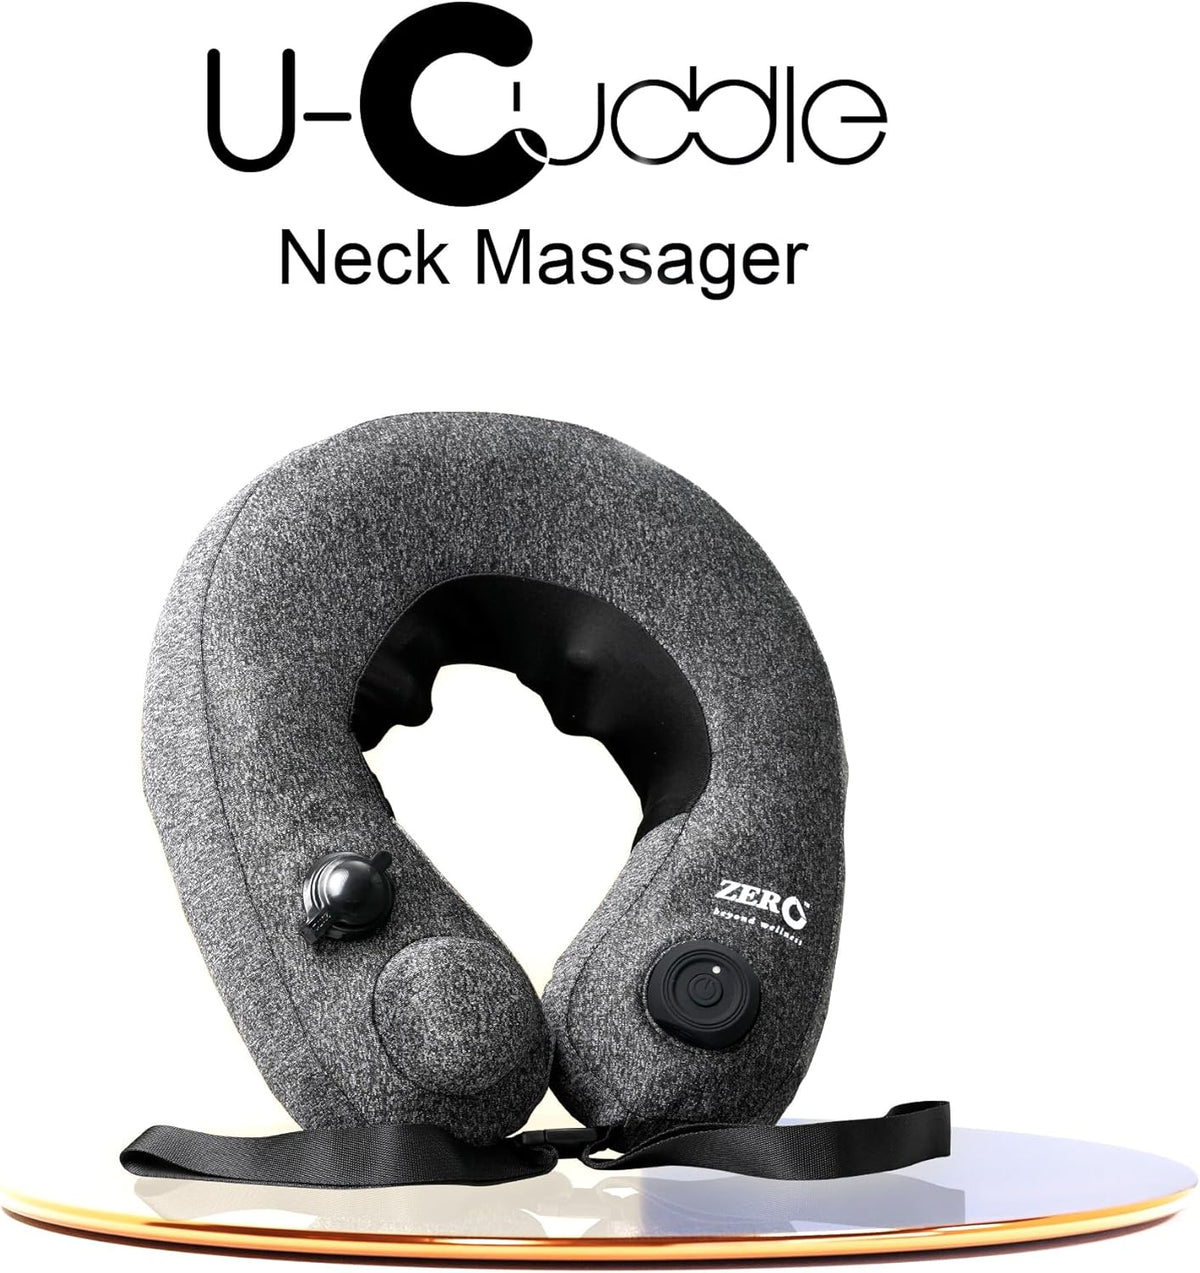 uCuddle-Cervical Neck Massage Pillow